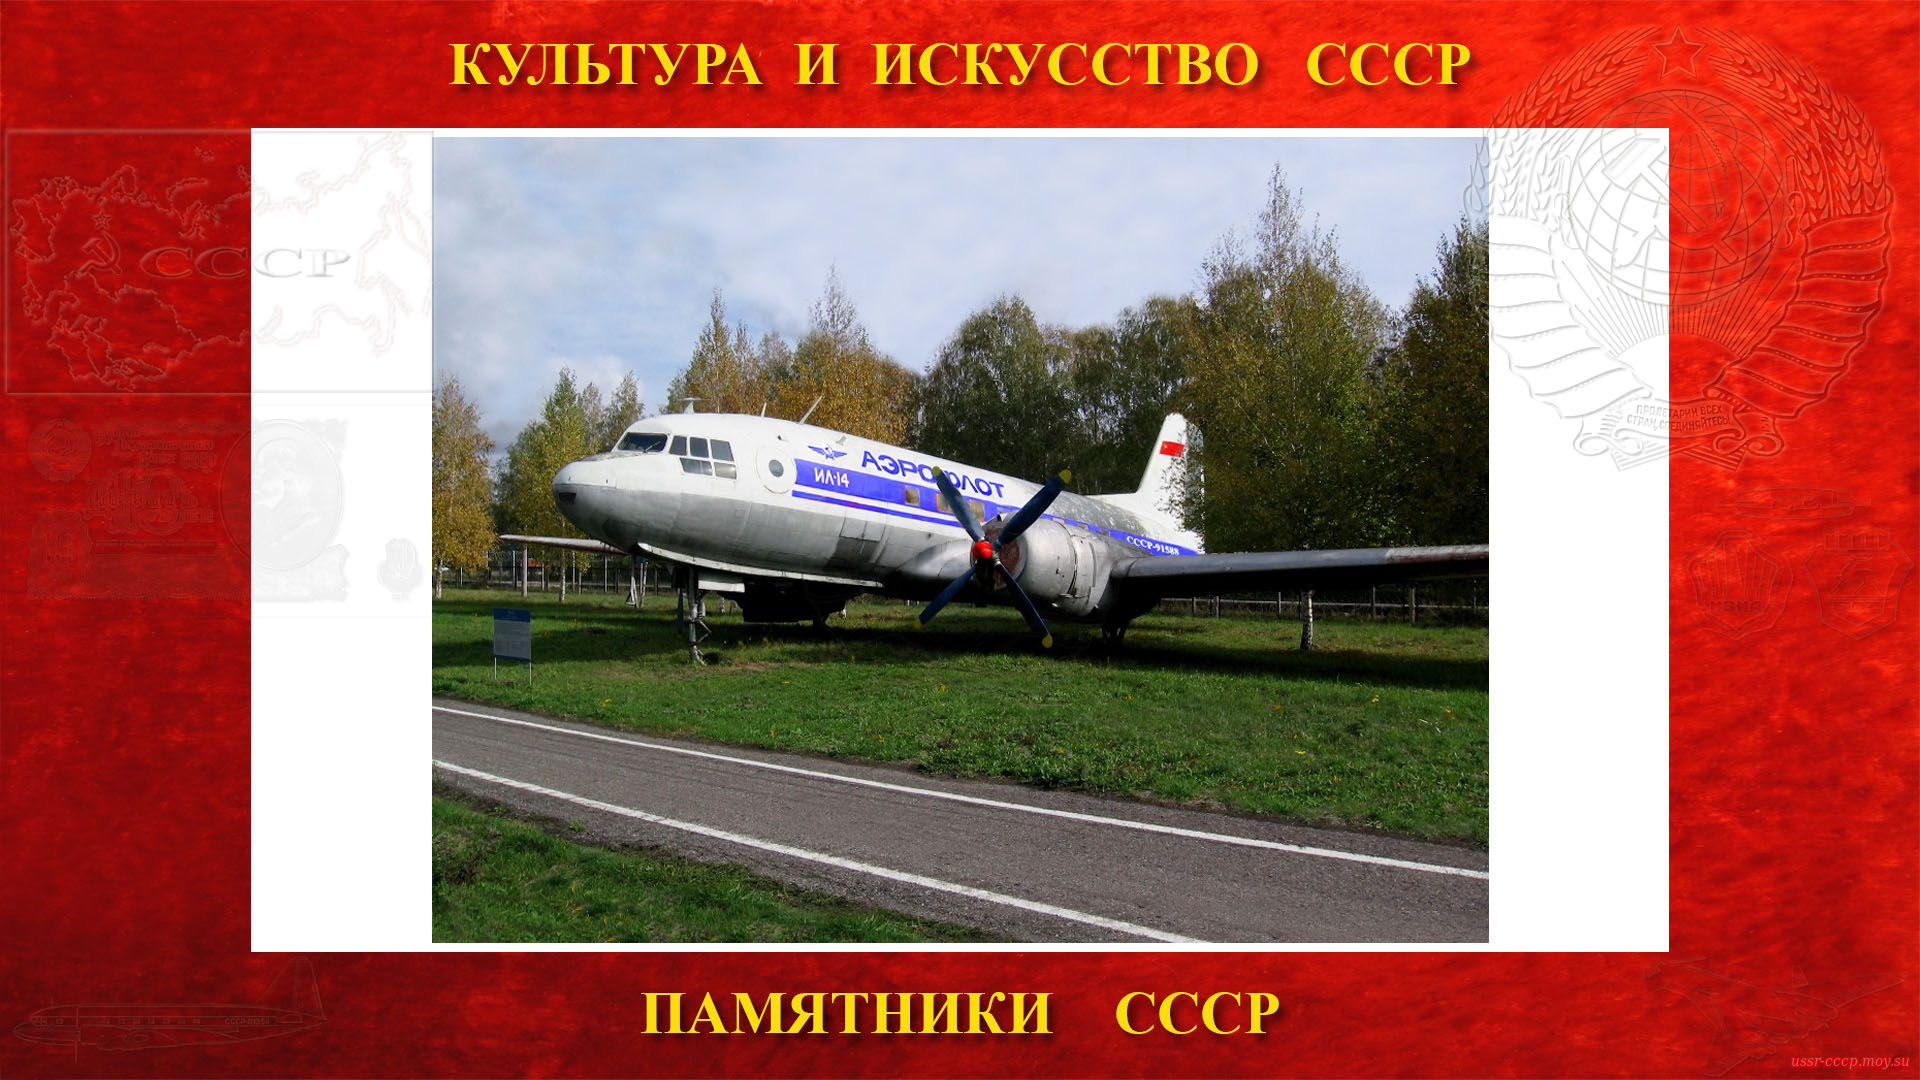 Памятник — Самолёт Ил-14 (Музей ГА Центра ГА СЭВ - Ульяновск)